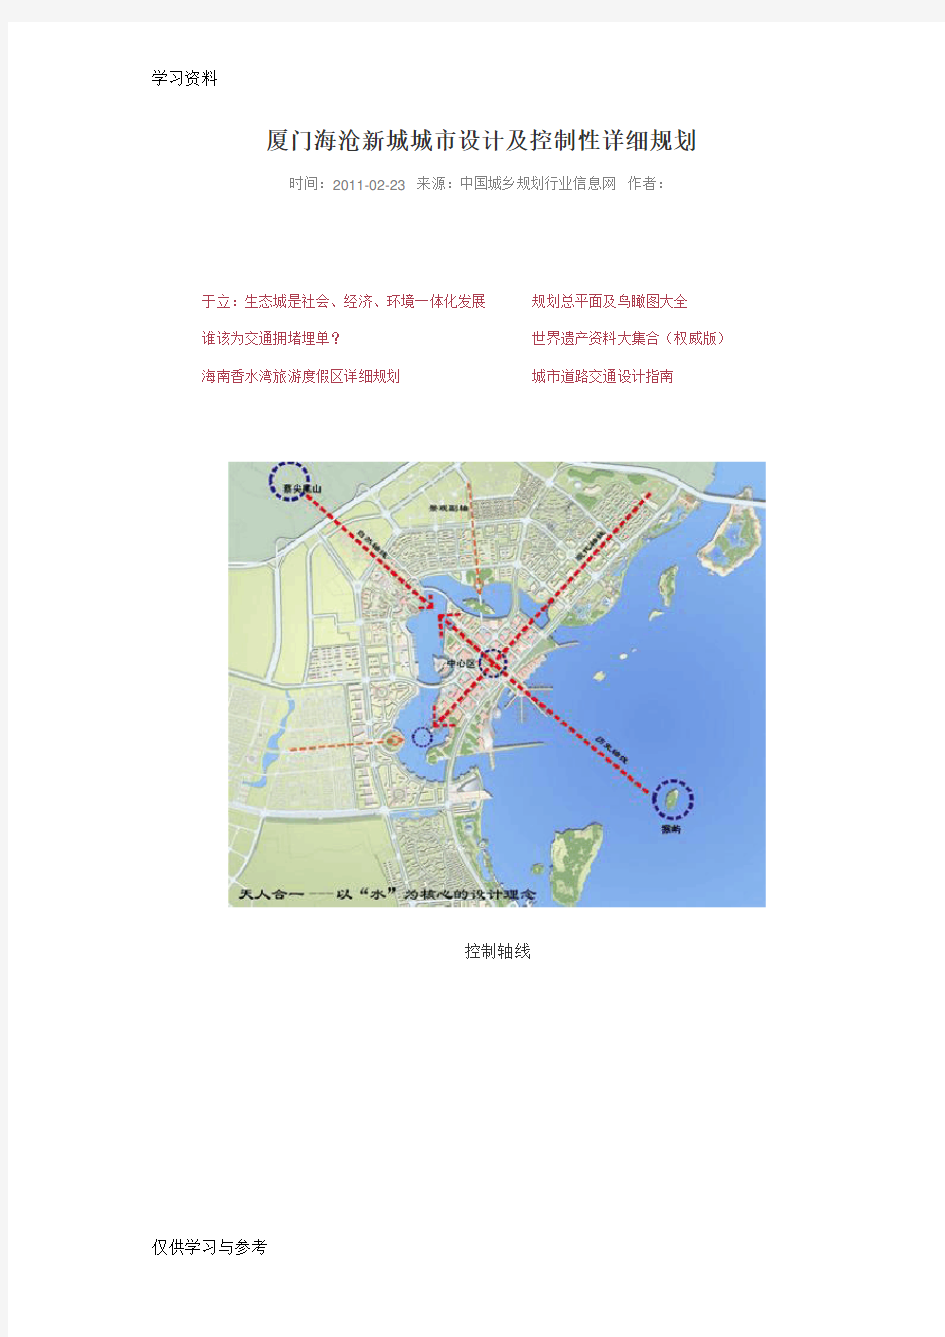 厦门海沧新城城市设计及控制性详细规划知识分享